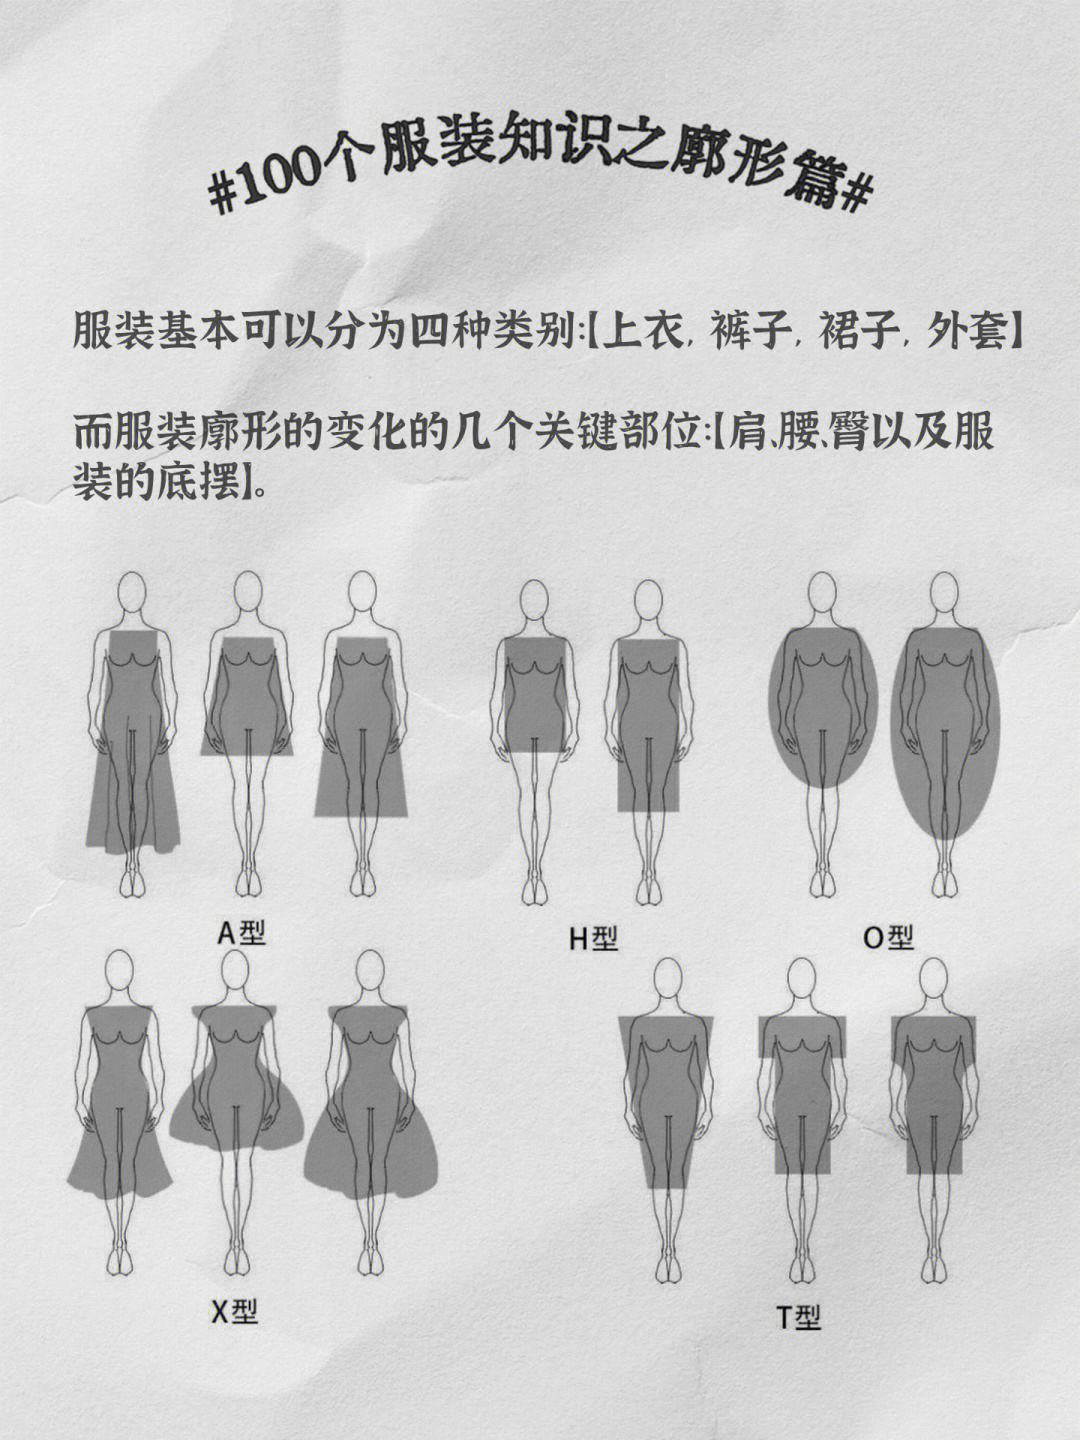 服装廓形分类图片